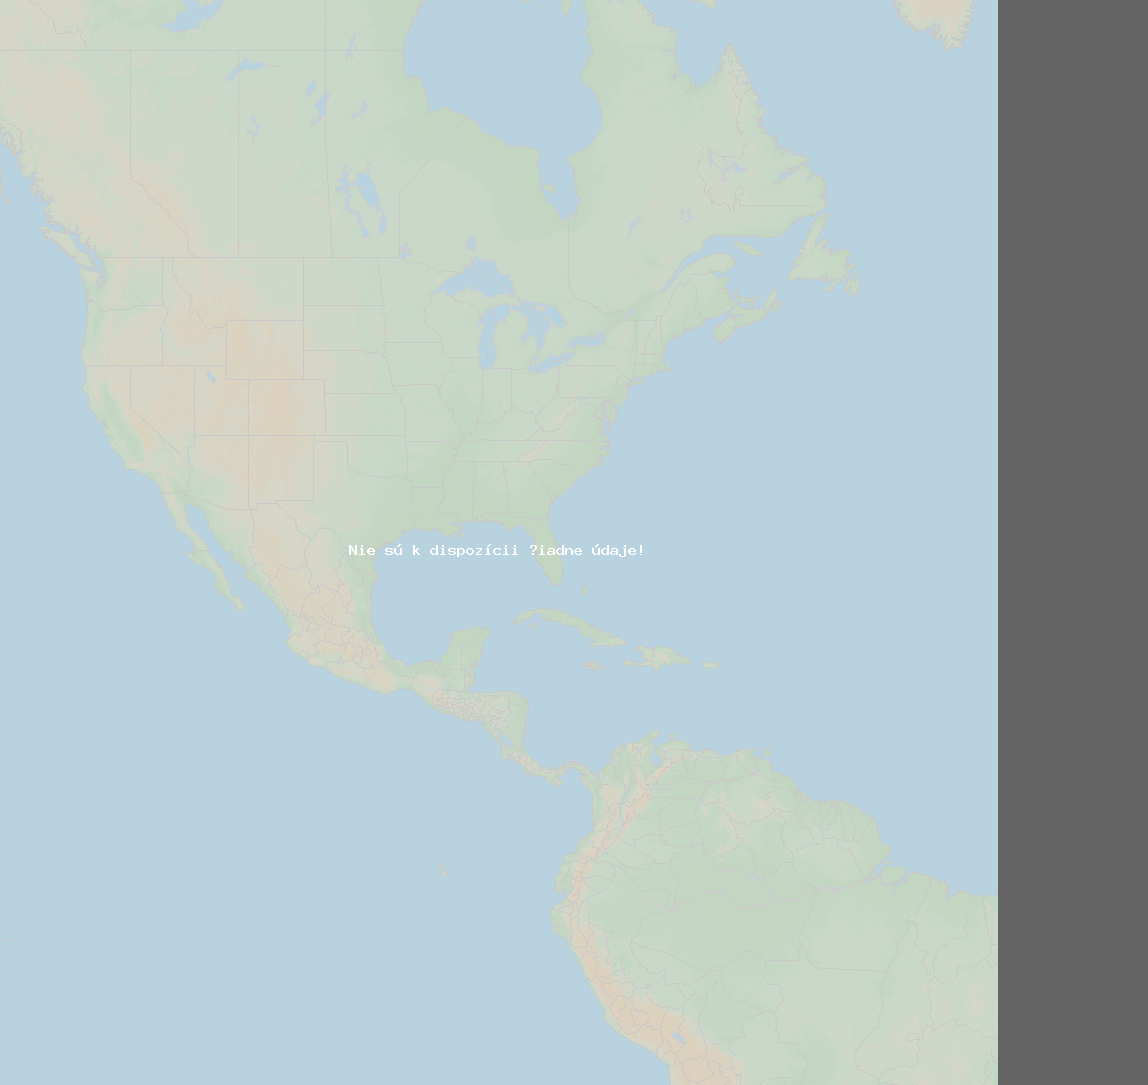 Pomer bleskov (Stanica Lawrence-Dade2) North America 2019 Júl